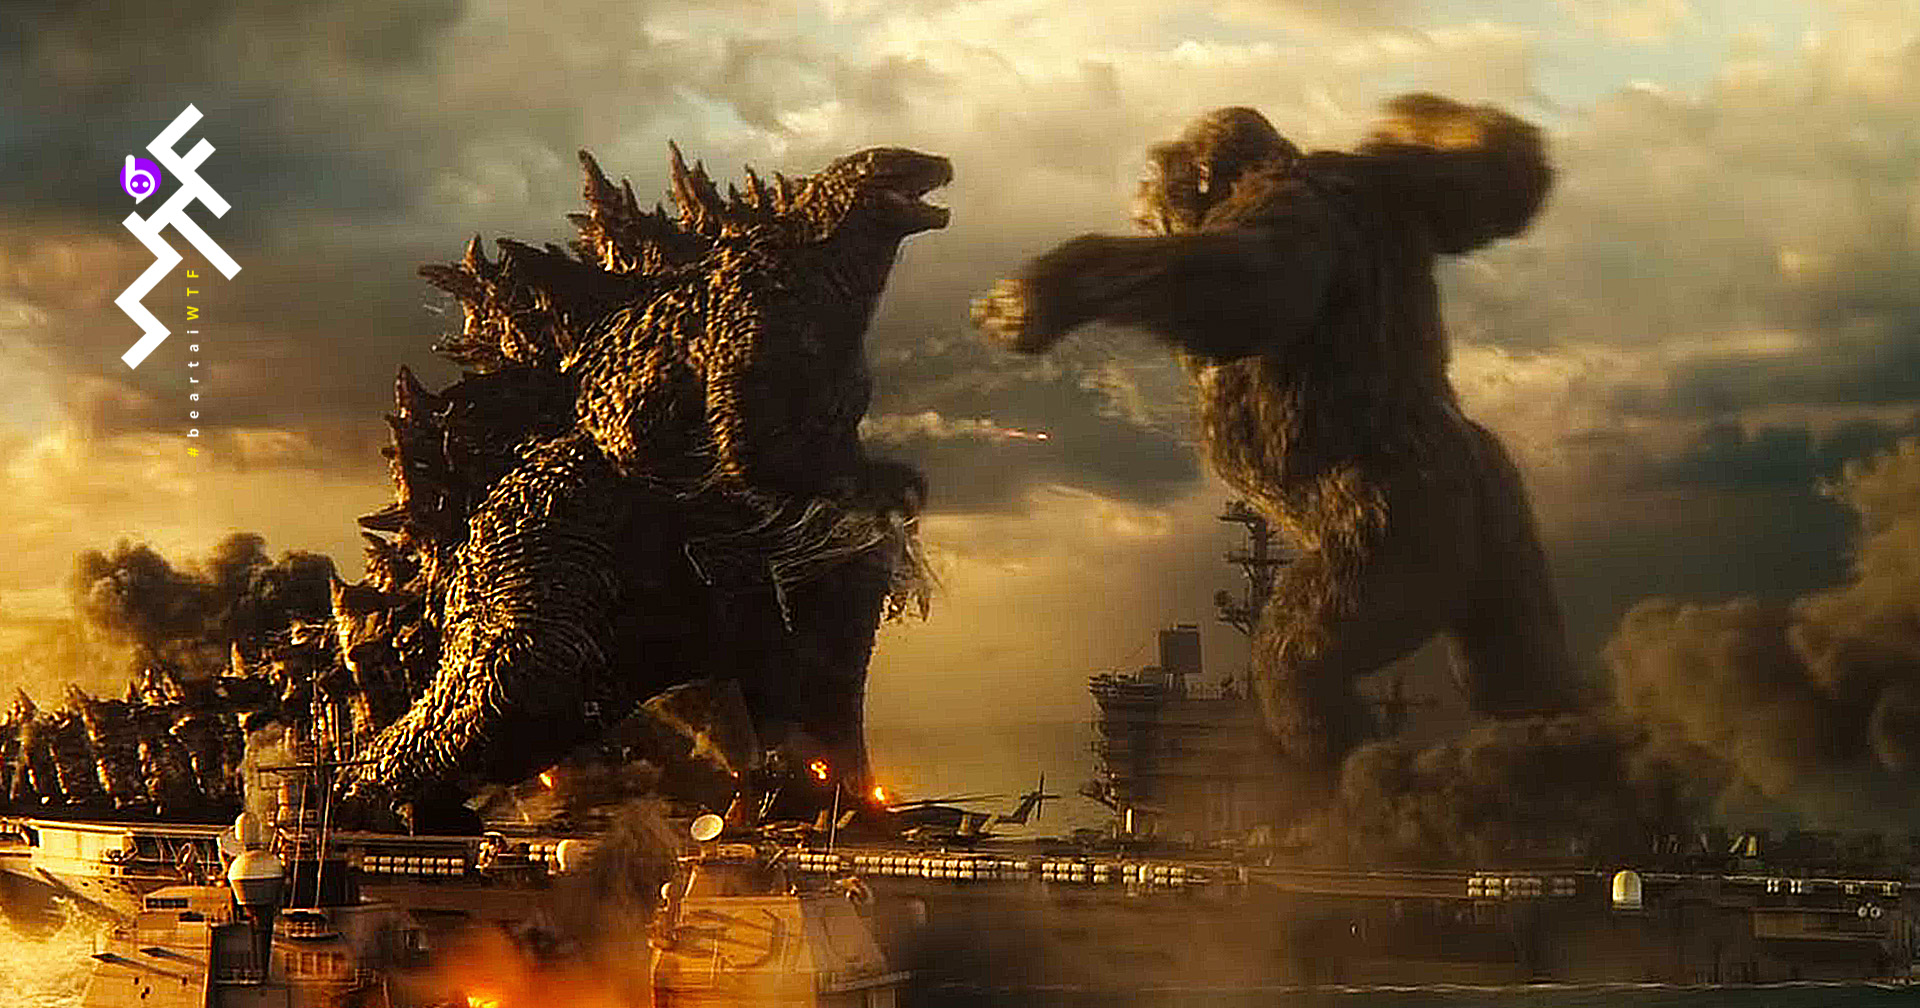 ตัวอย่าง Godzilla vs. Kong ทำยอดวิวสูงสุดเป็นประวัติการณ์ของ Warner Bros.